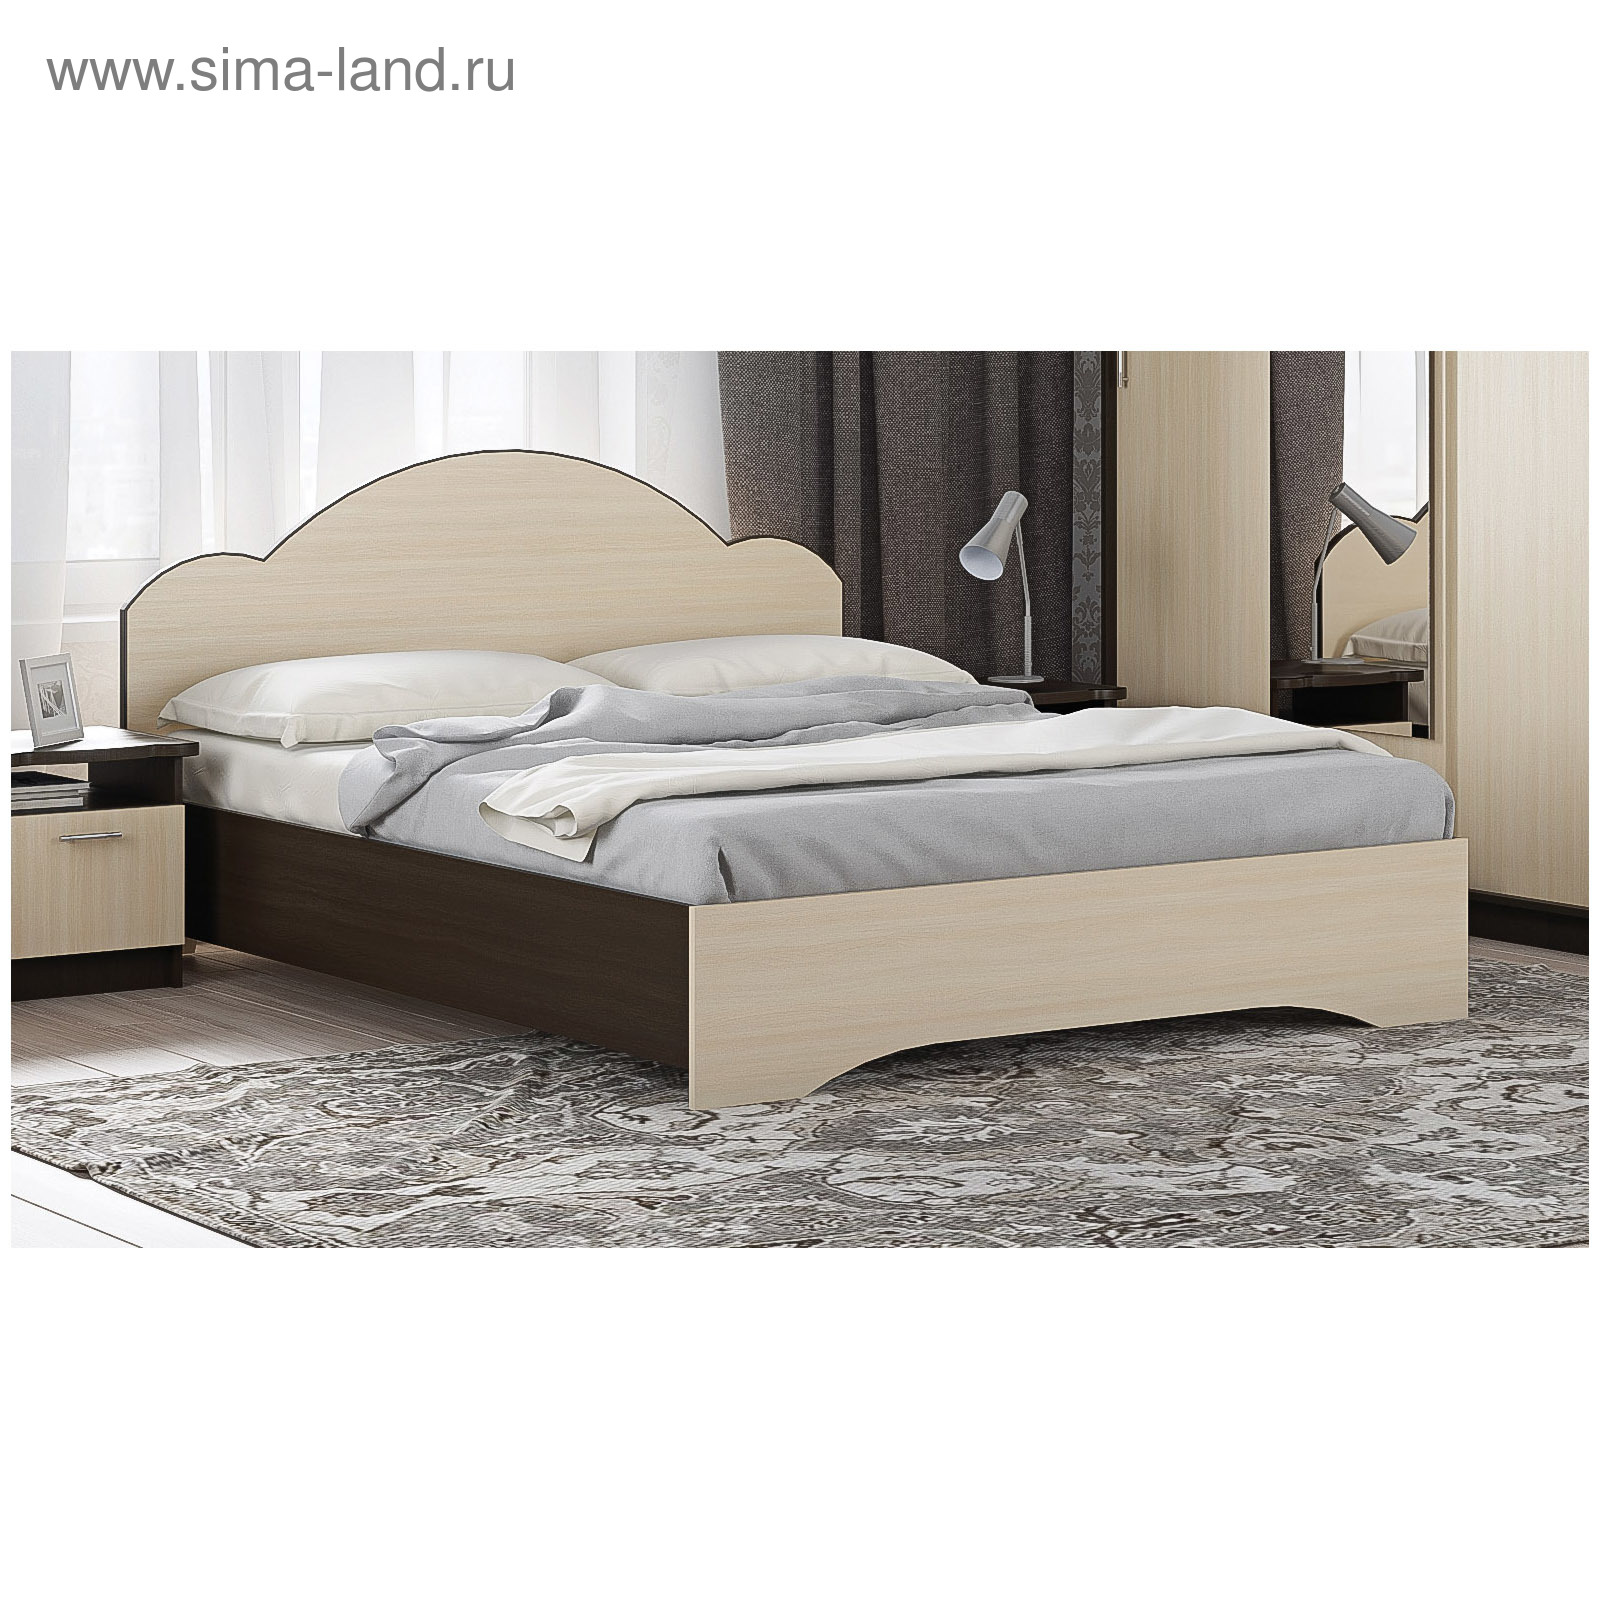 Кровать двуспальная Diana 160 x 200 см